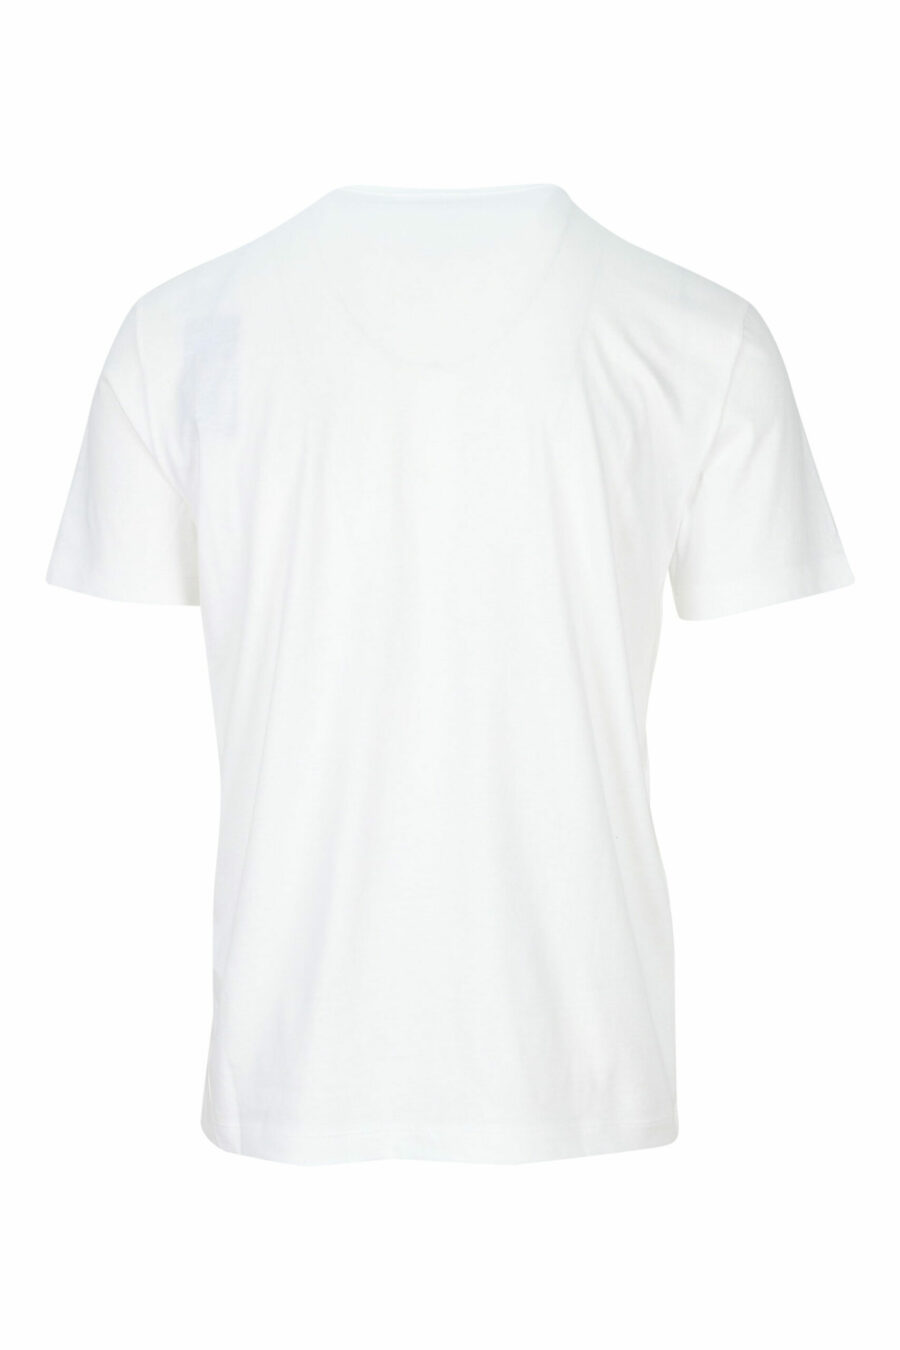 White T-shirt with black maxilogo "lux identity" - 8057767688486 1 scaled